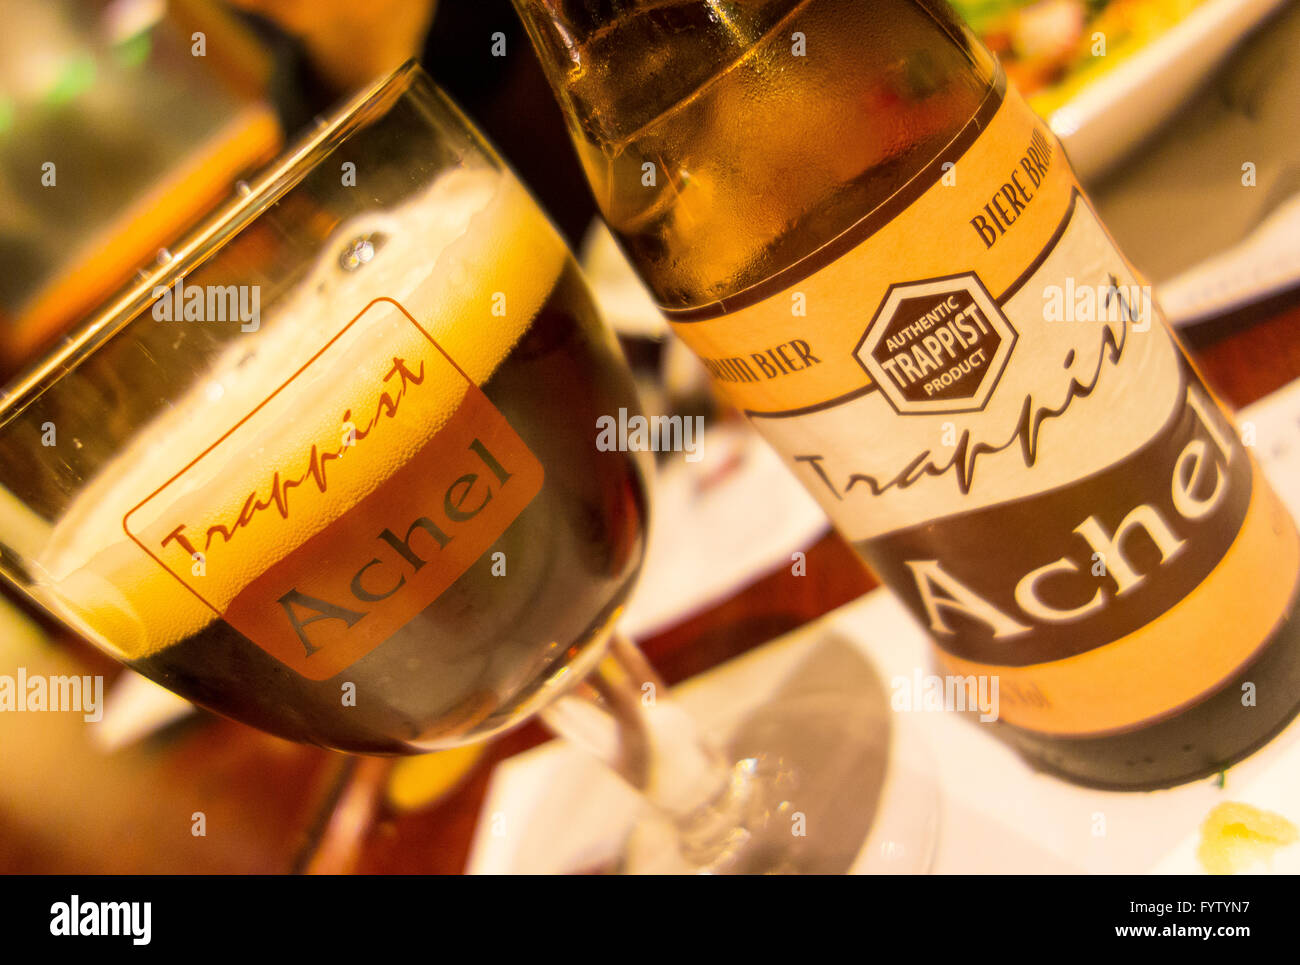 BRUGES, BELGIQUE - bouteille et verre de bière belge trappiste Achel. Banque D'Images